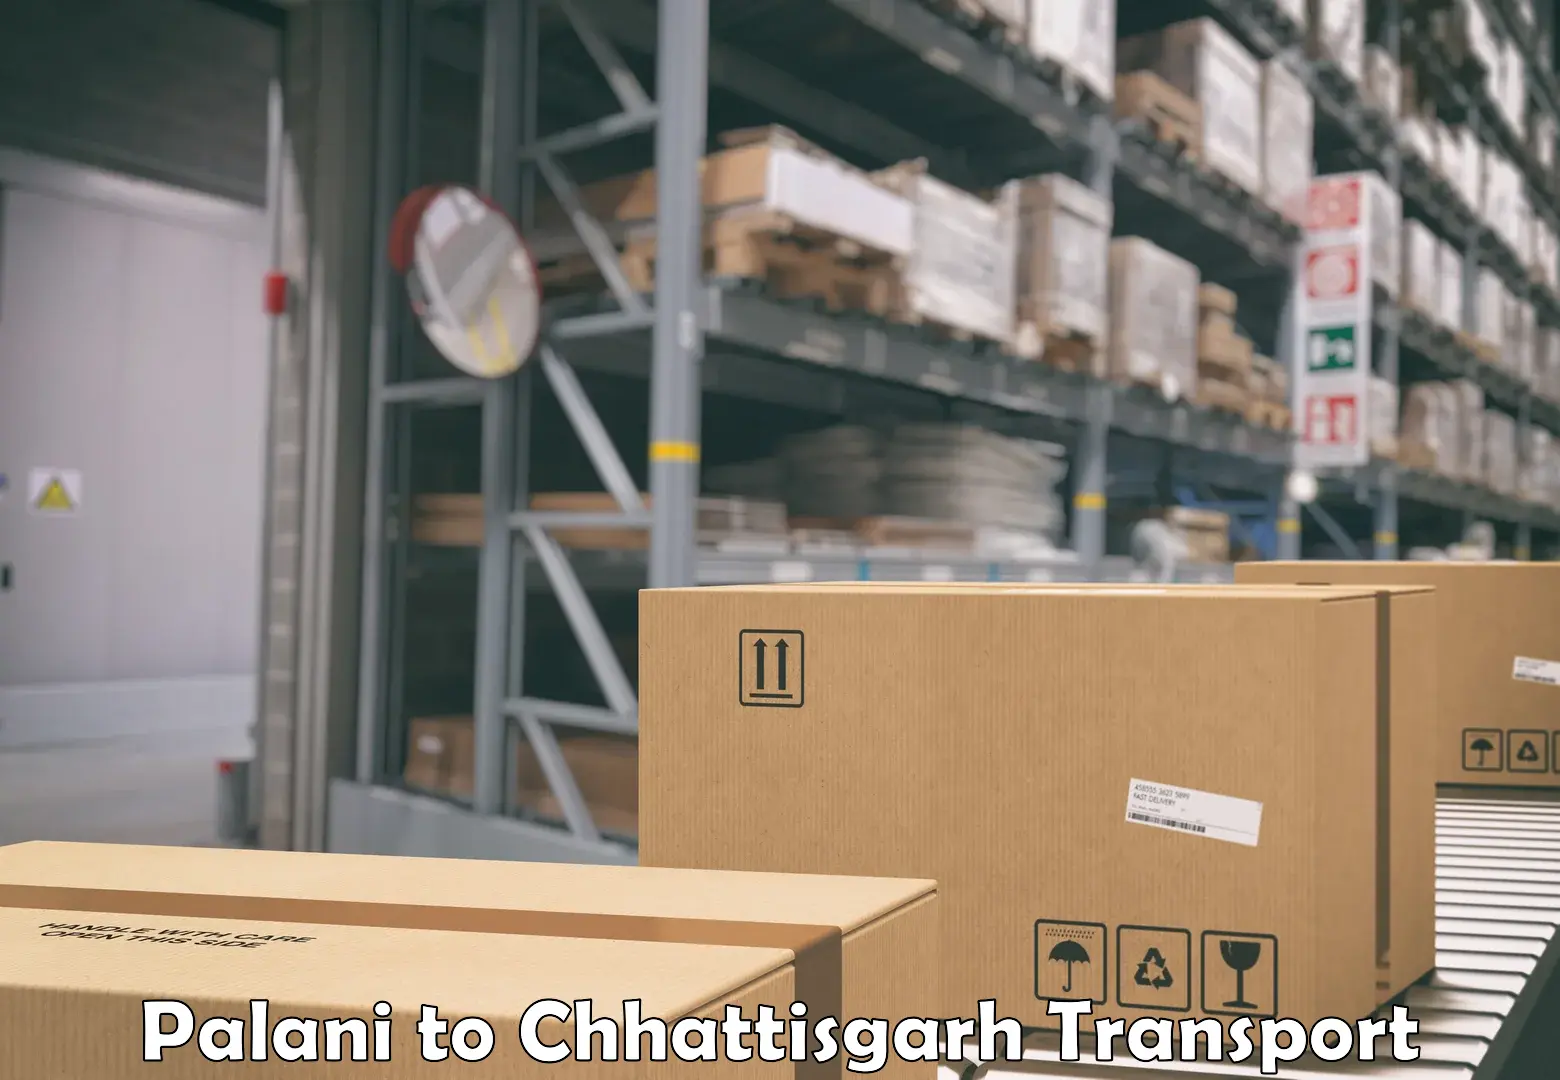 Shipping partner Palani to Chhattisgarh